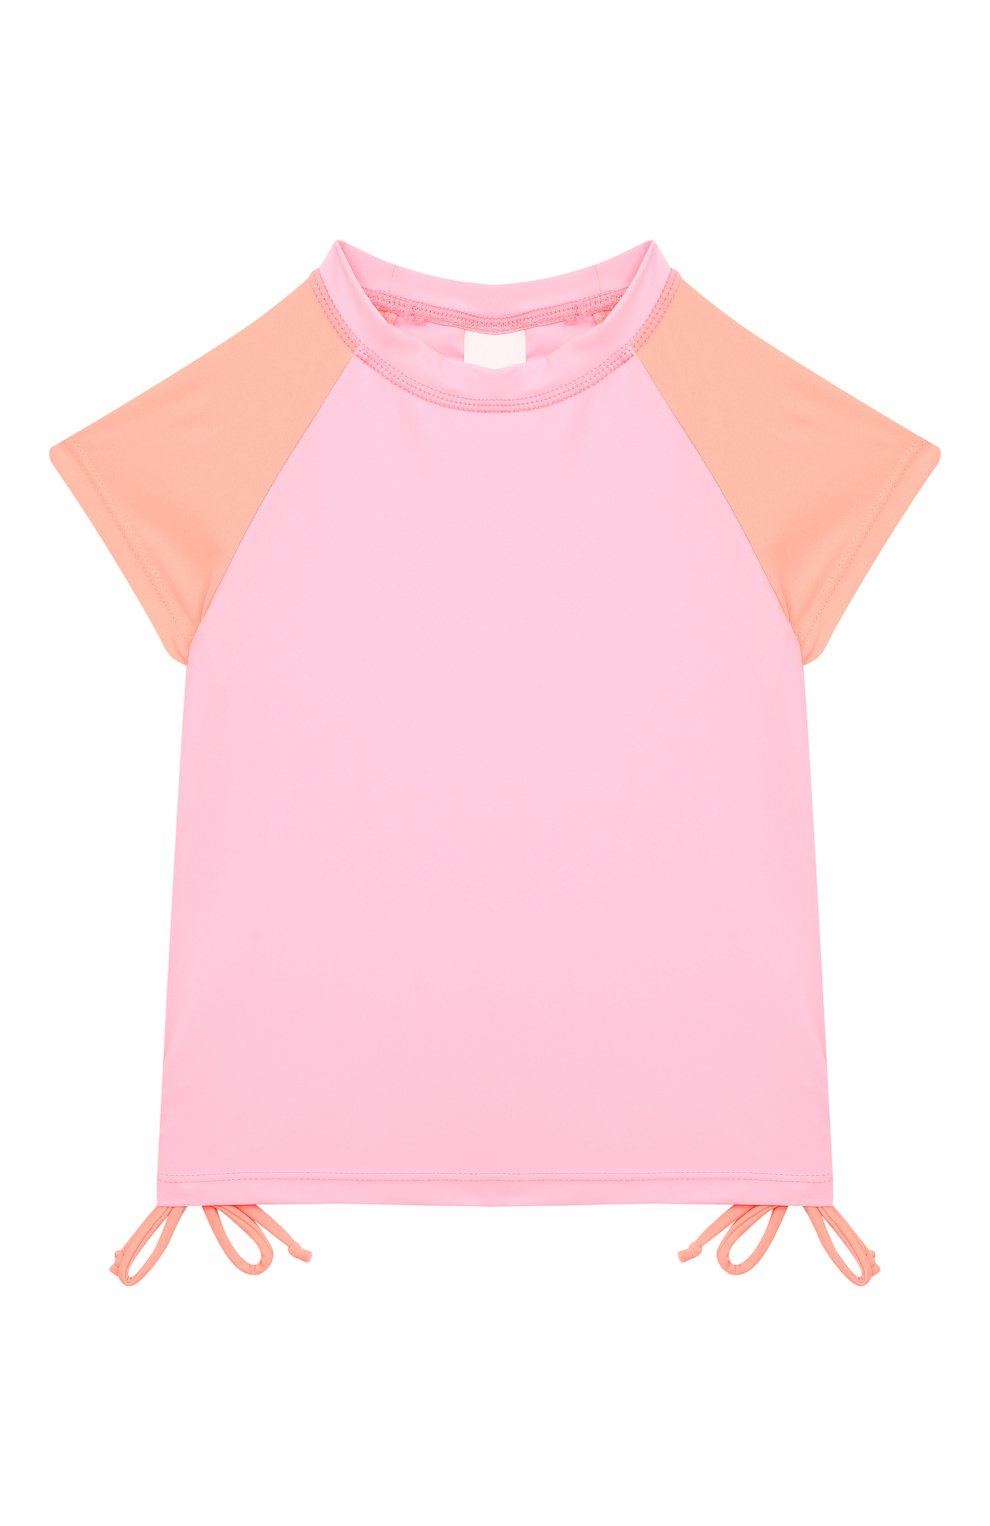 Детского раздельный купальник SNAPPER ROCK разноцветного цвета, арт. G50024 | Фото 2 (Кросс-КТ НВ: Комбинезон - пляж; Ростовка одежда: 24 мес | 92 см, 18 мес | 86 см, 12 мес | 80 см)